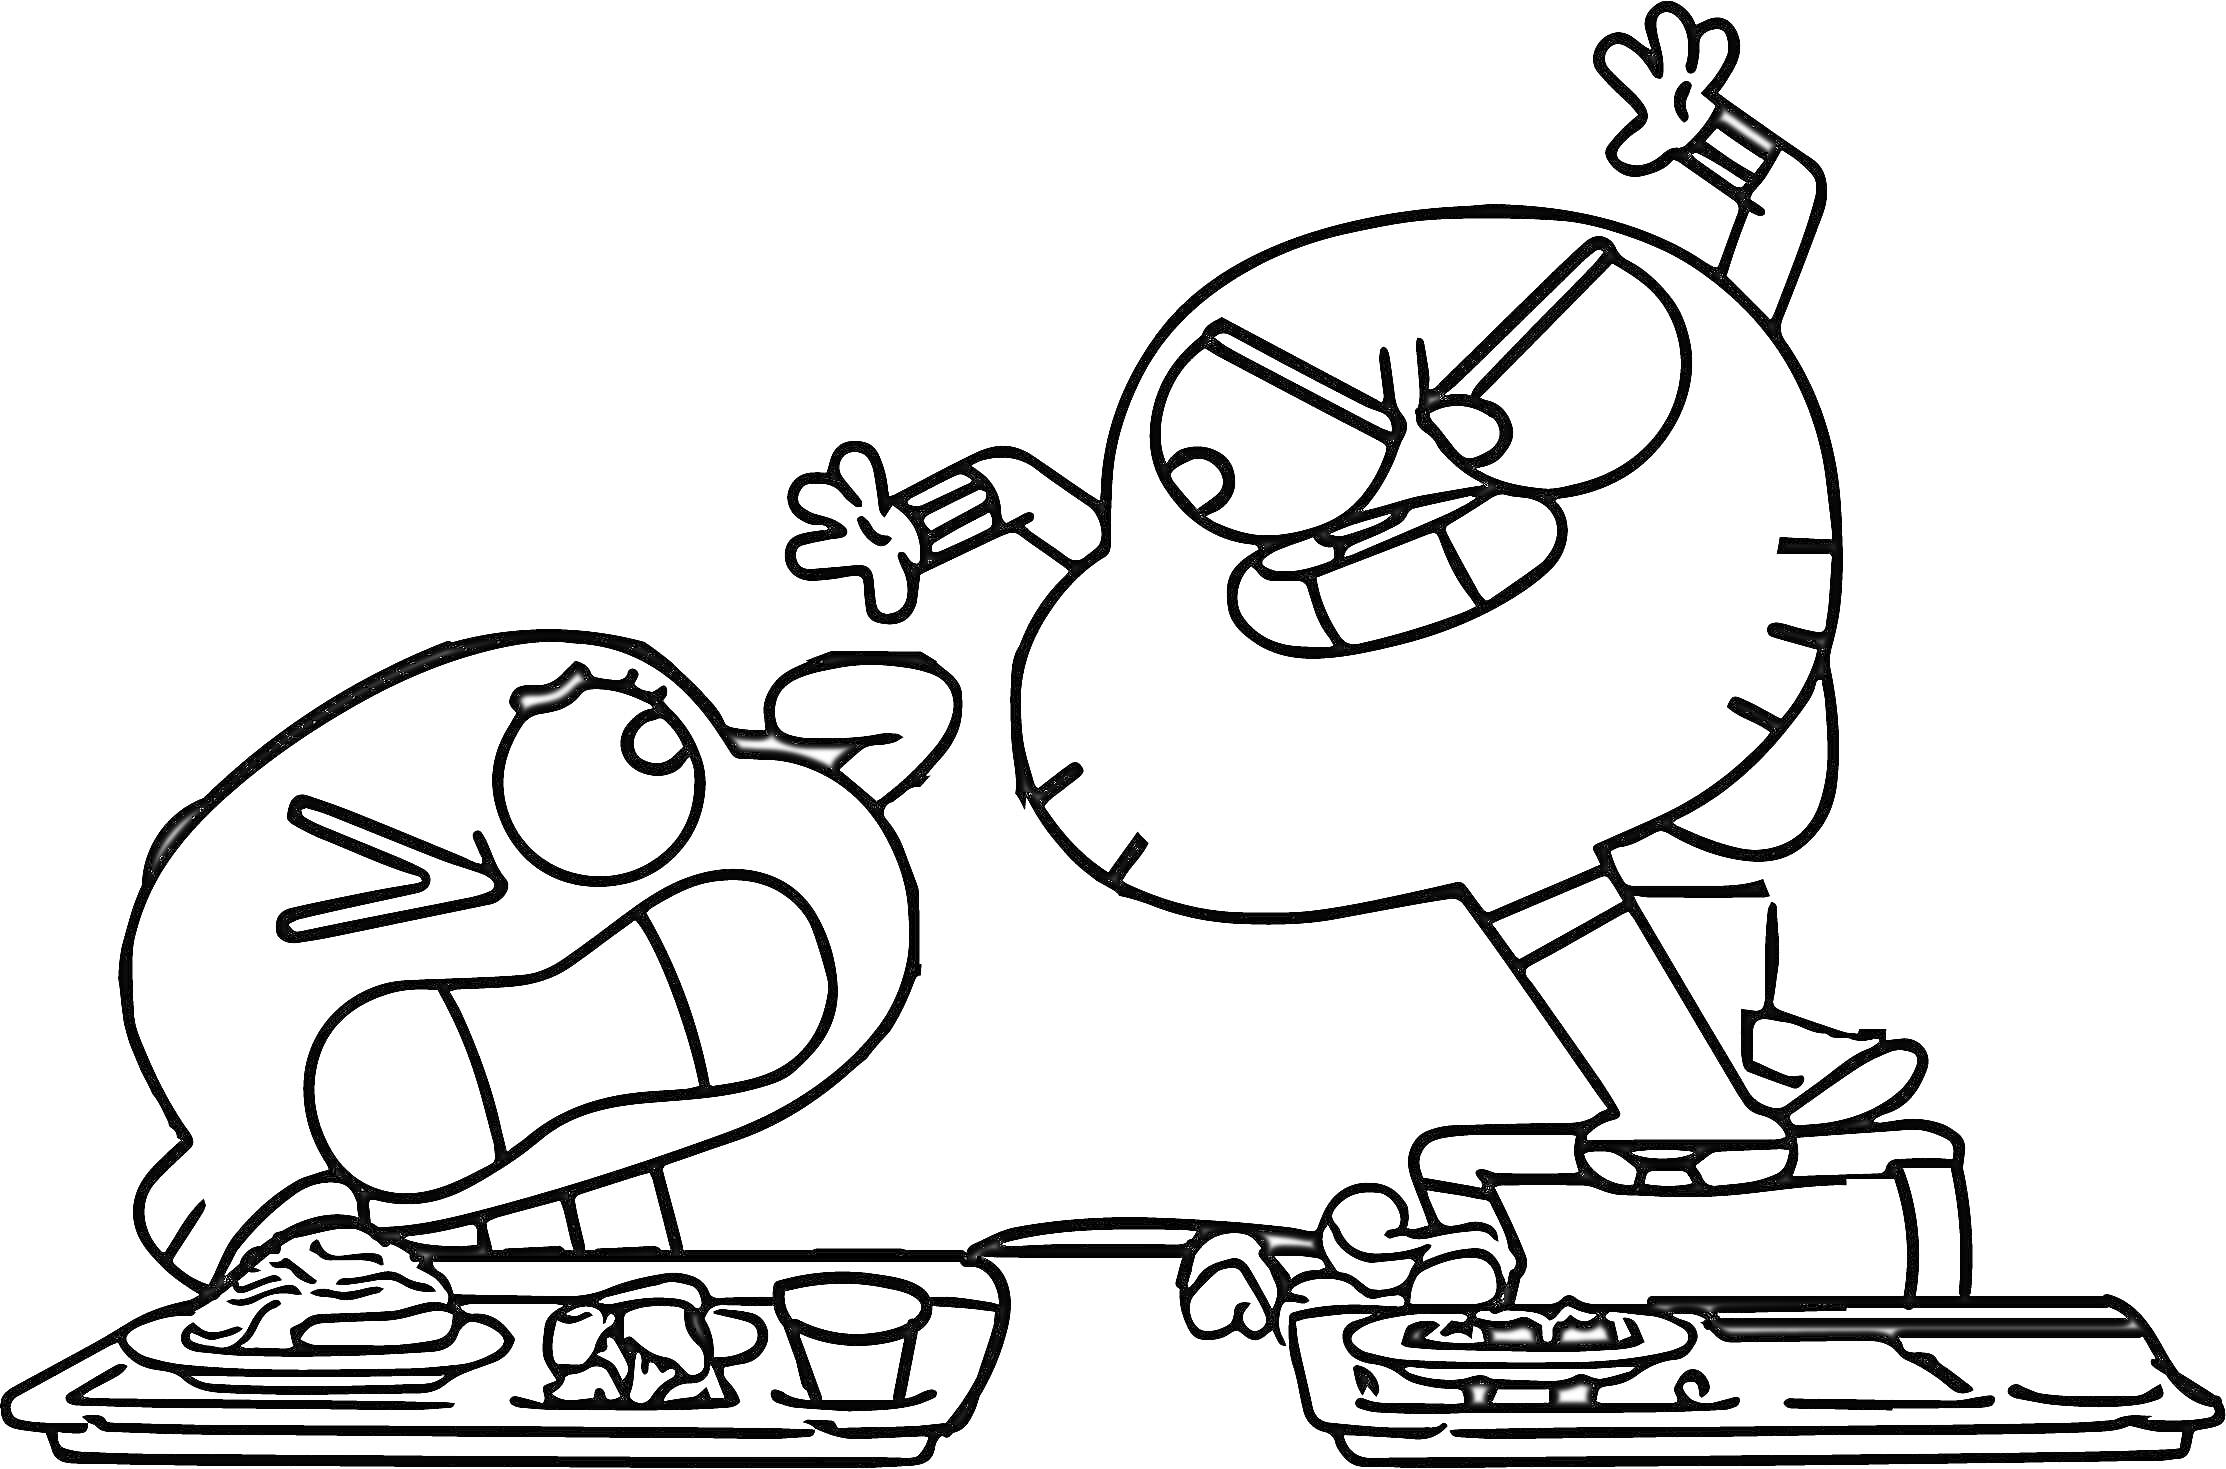 Гамбол и Дарвин ссорятся в столовой, в центре изображены два персонажа: один сидит за столом, а второй стоит на стуле с поднятой рукой, на столах лежат подносы с едой